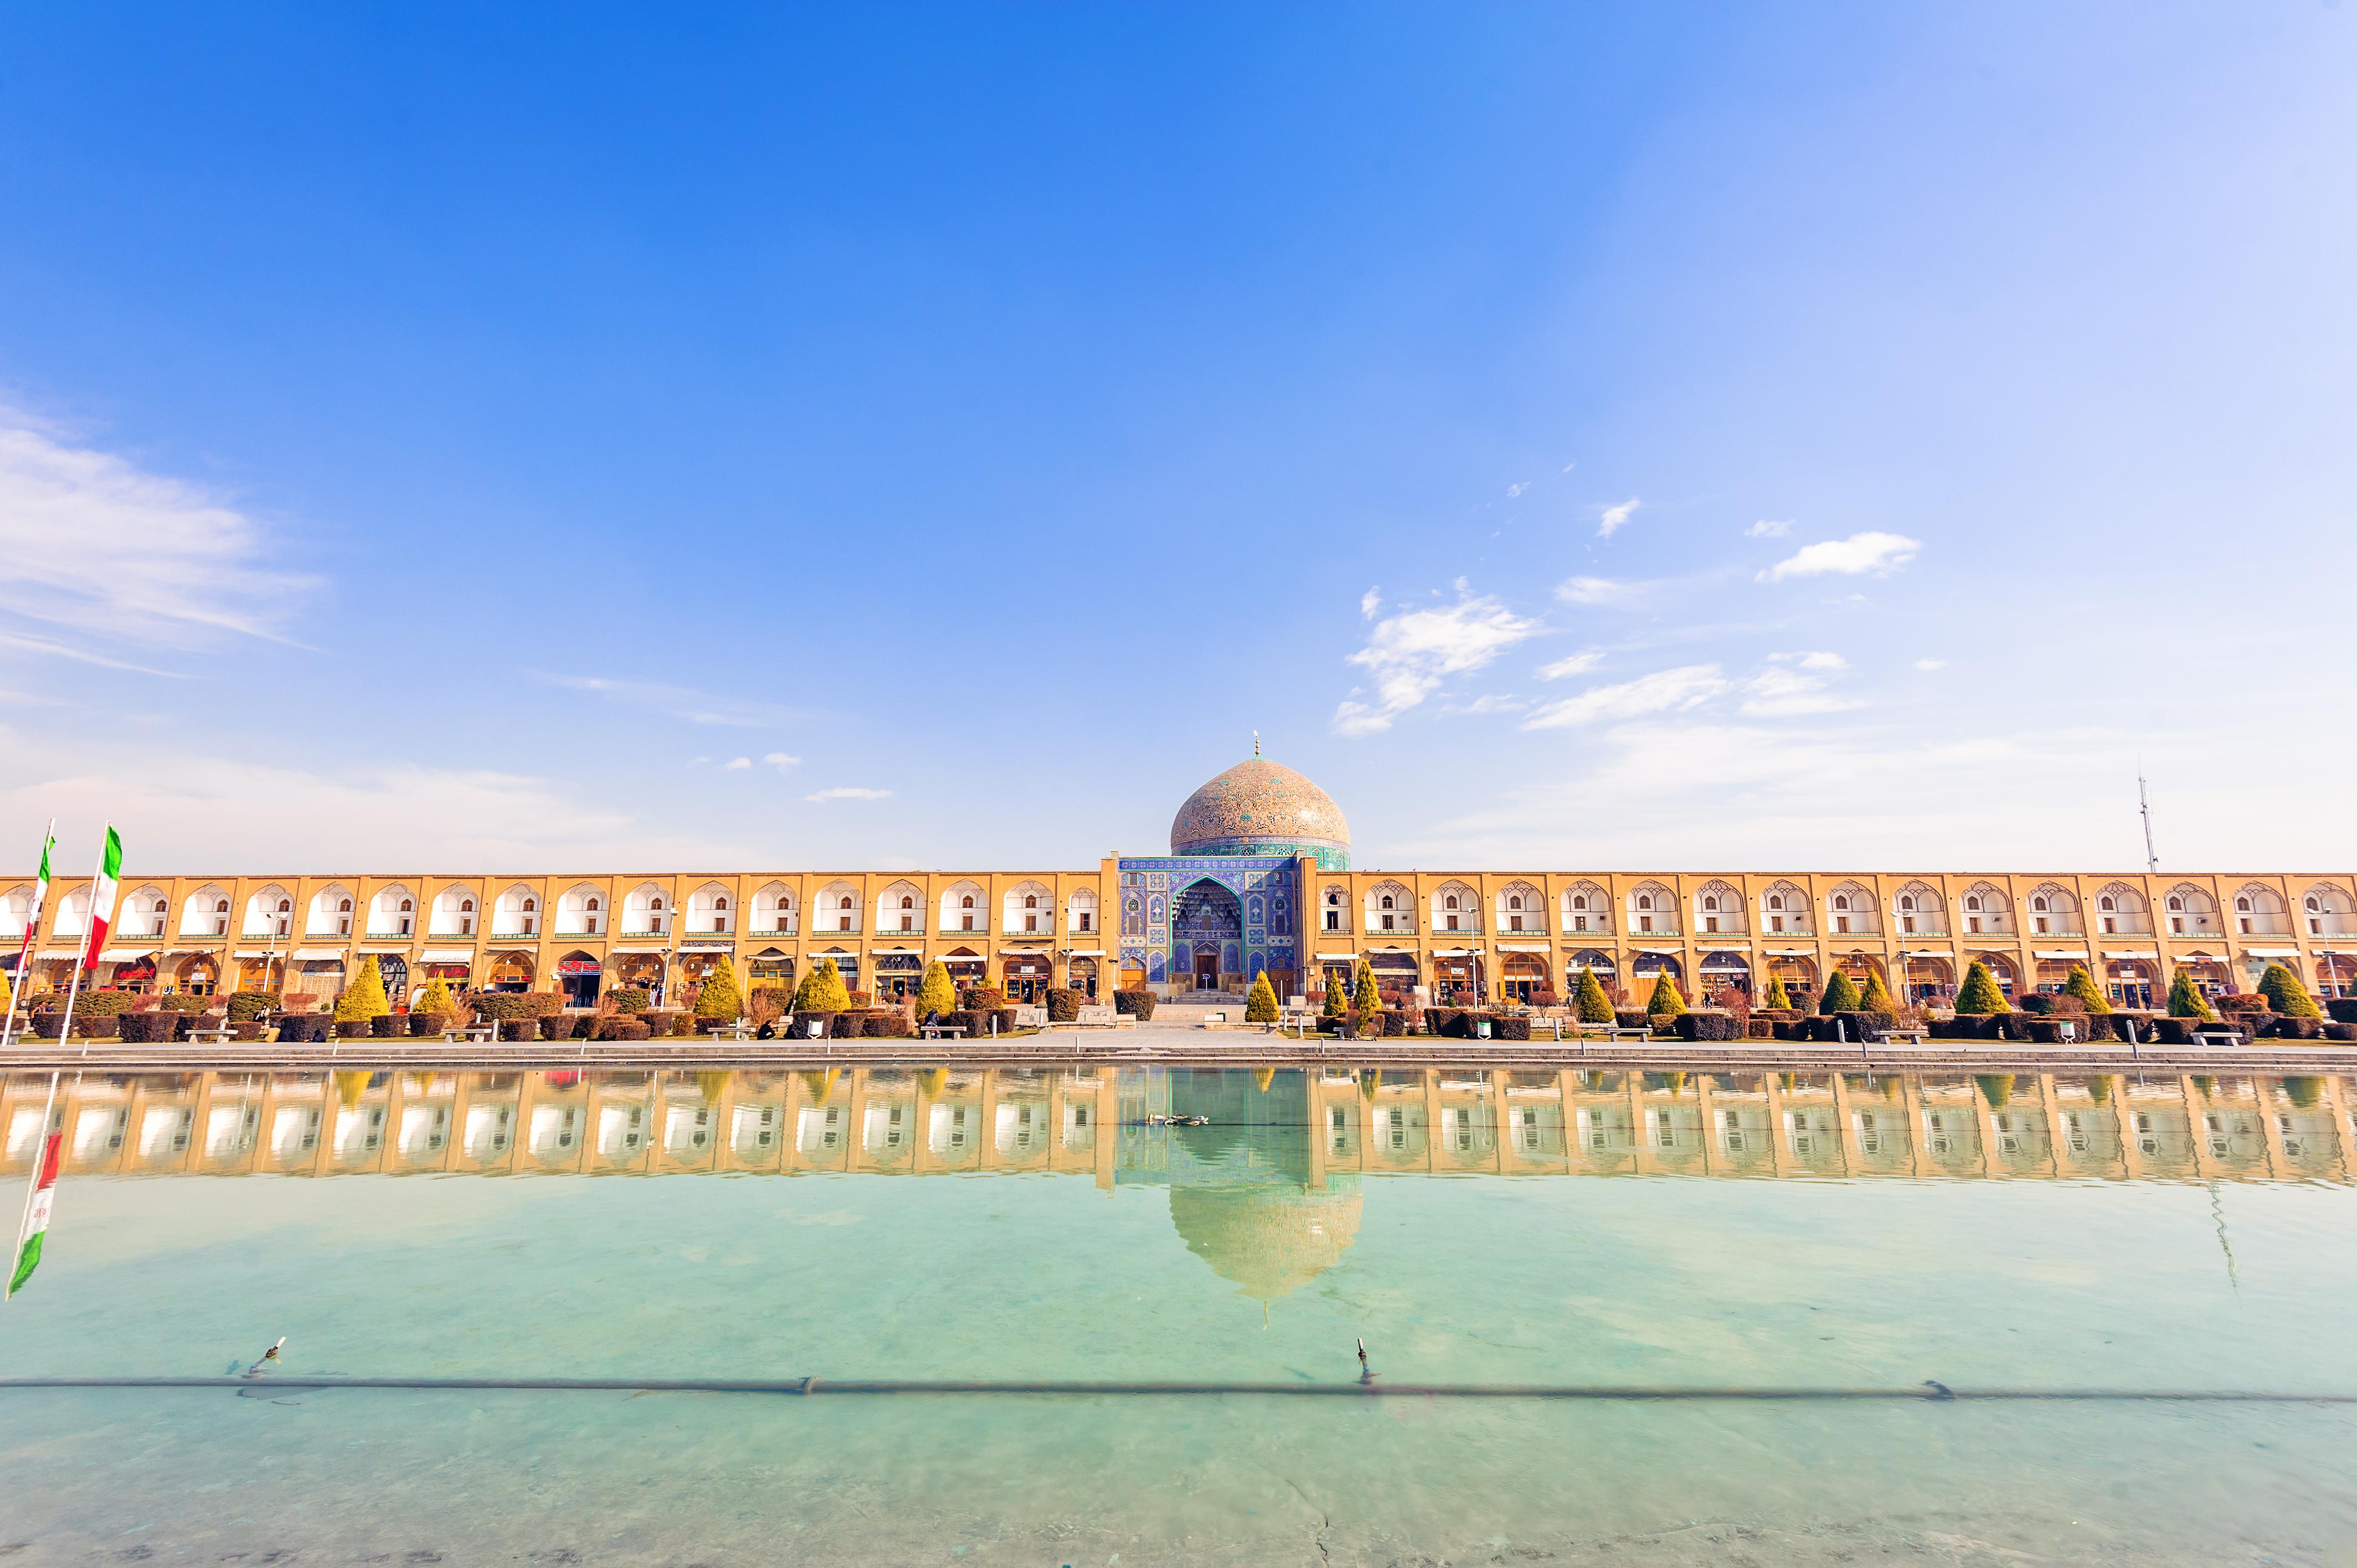 View of Sheikh Lotfollah Mosque in the stunning courtyard © Hamdan Yoshida / Shutterstock